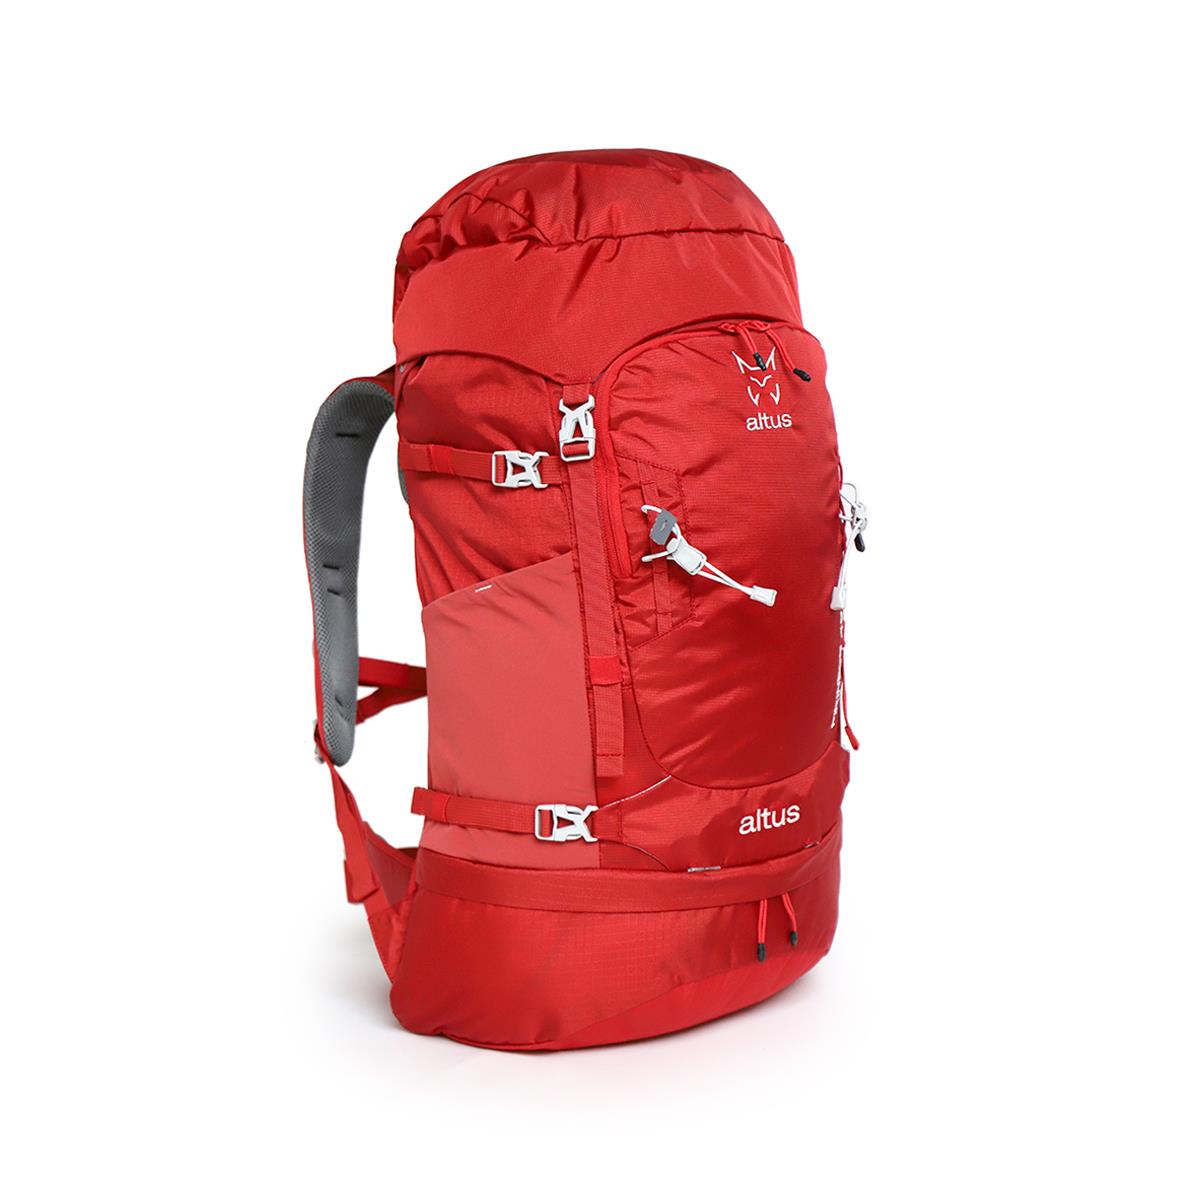 Altus PIRINEOS 40 H30 Backpack